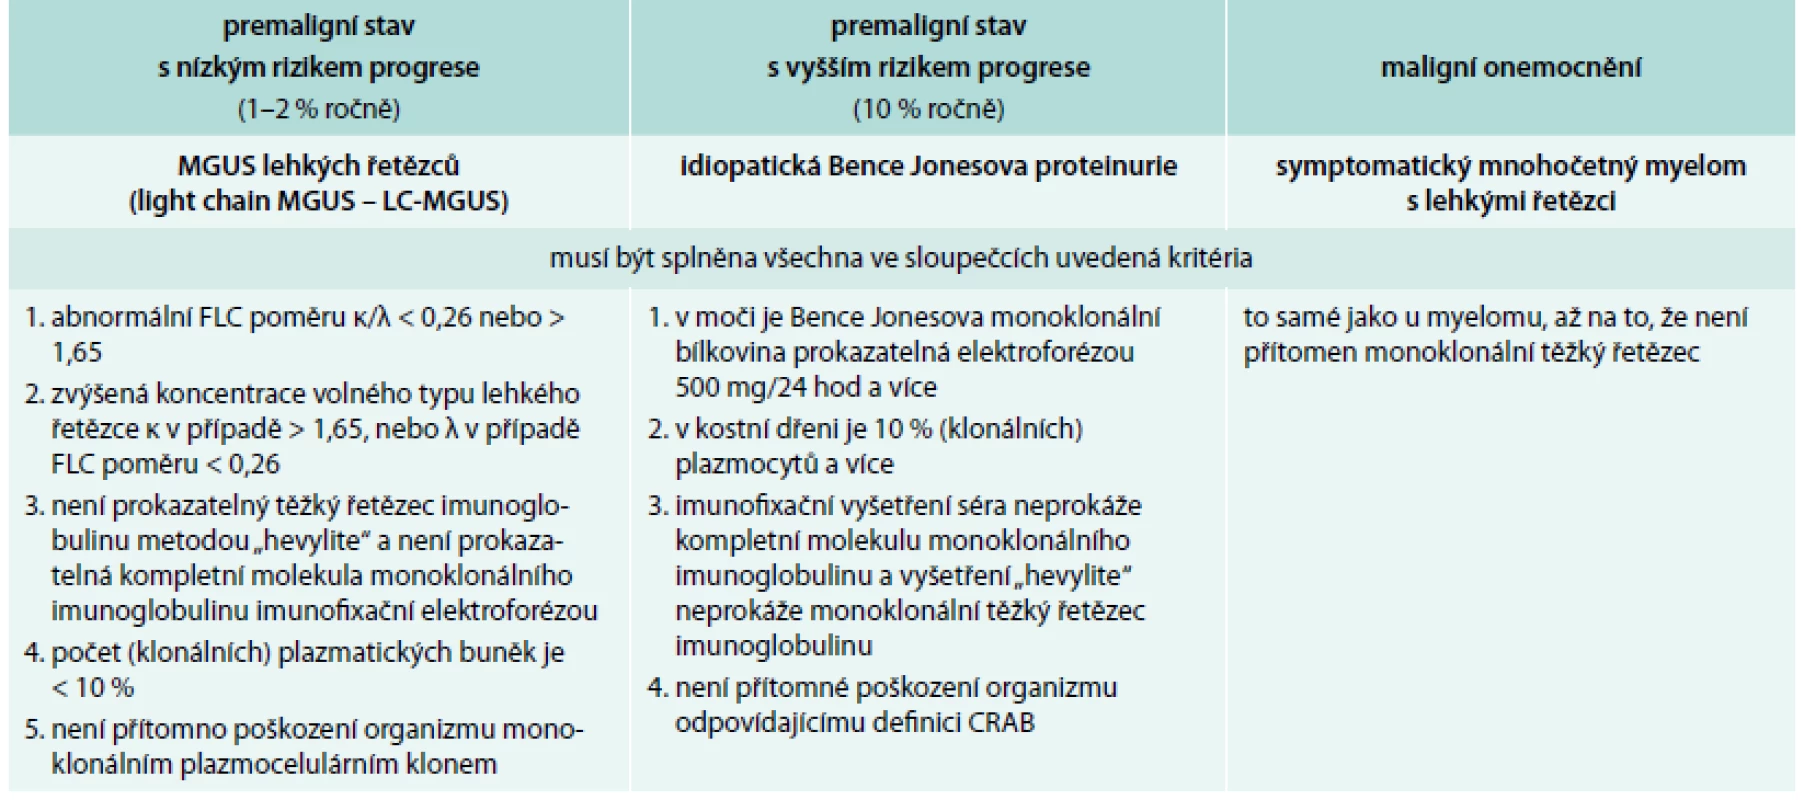 Definice jednotek provázených pouze klonálními volnými lehkými řetězci imunoglobulinu kappa nebo lambda dle International Myeloma Working Group 2010